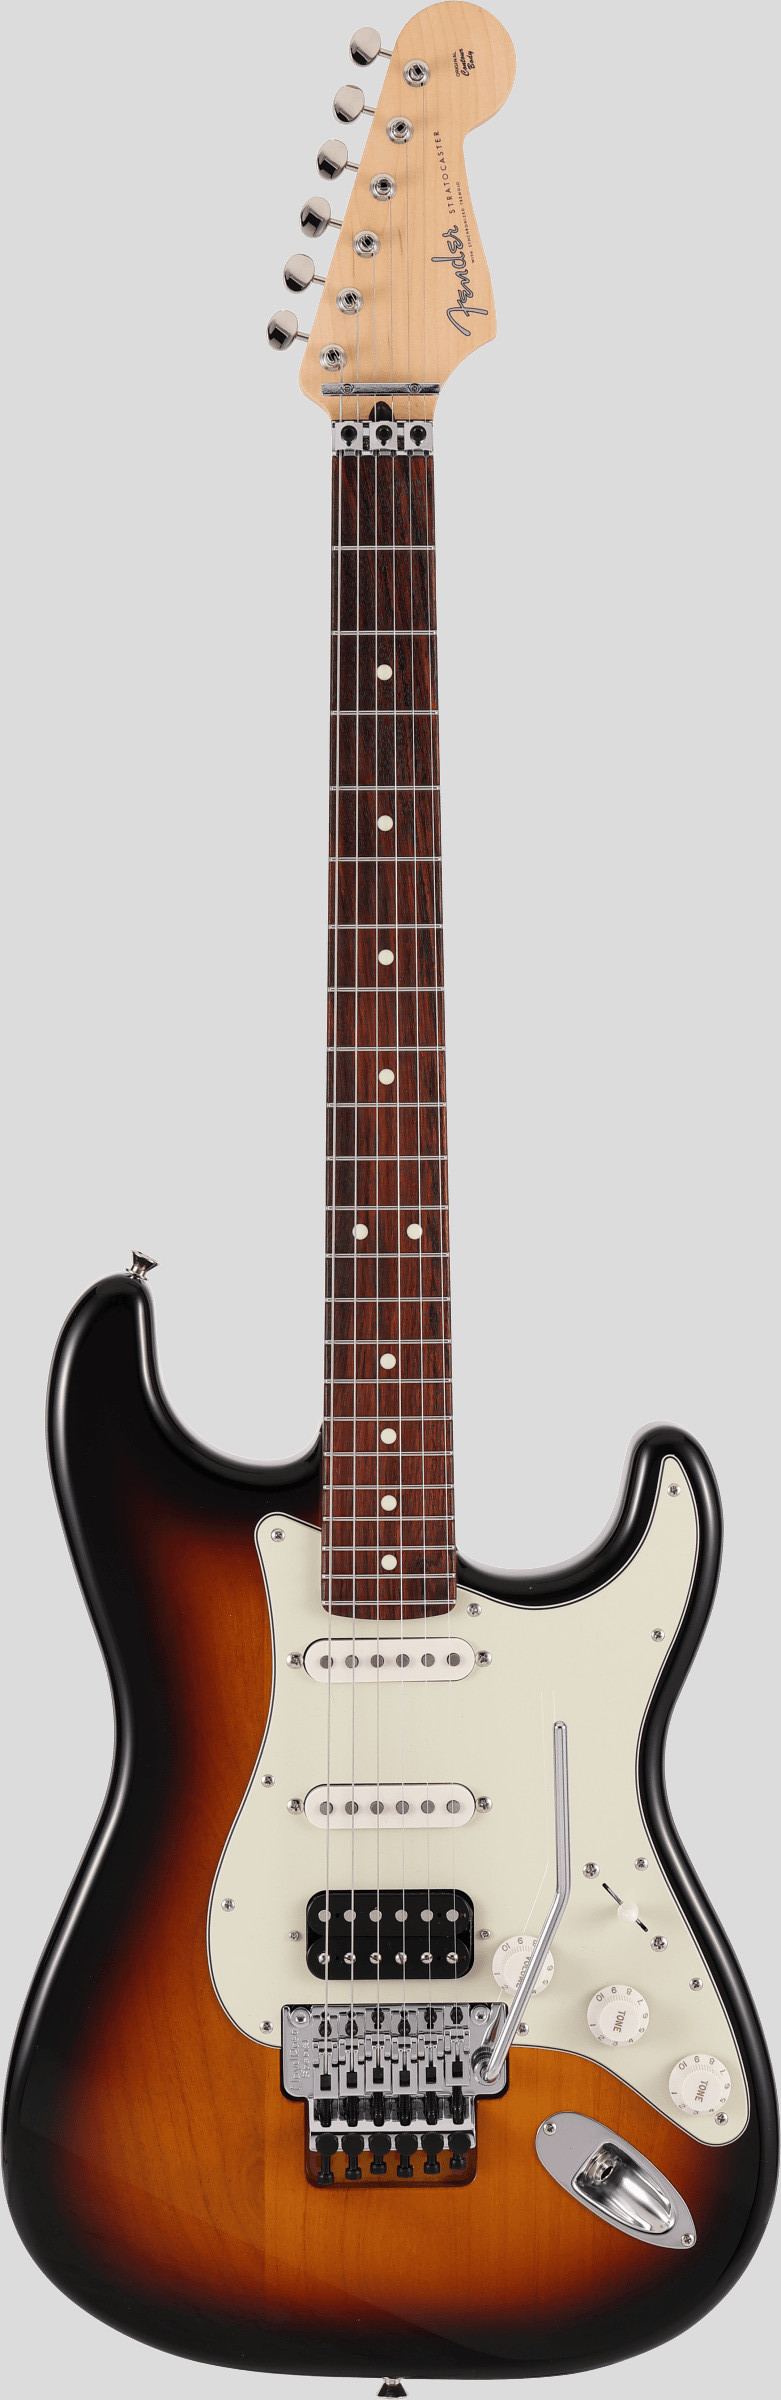 Fender Limited Edition Stratocaster Floyd Rose 3-Color Sunburst 1